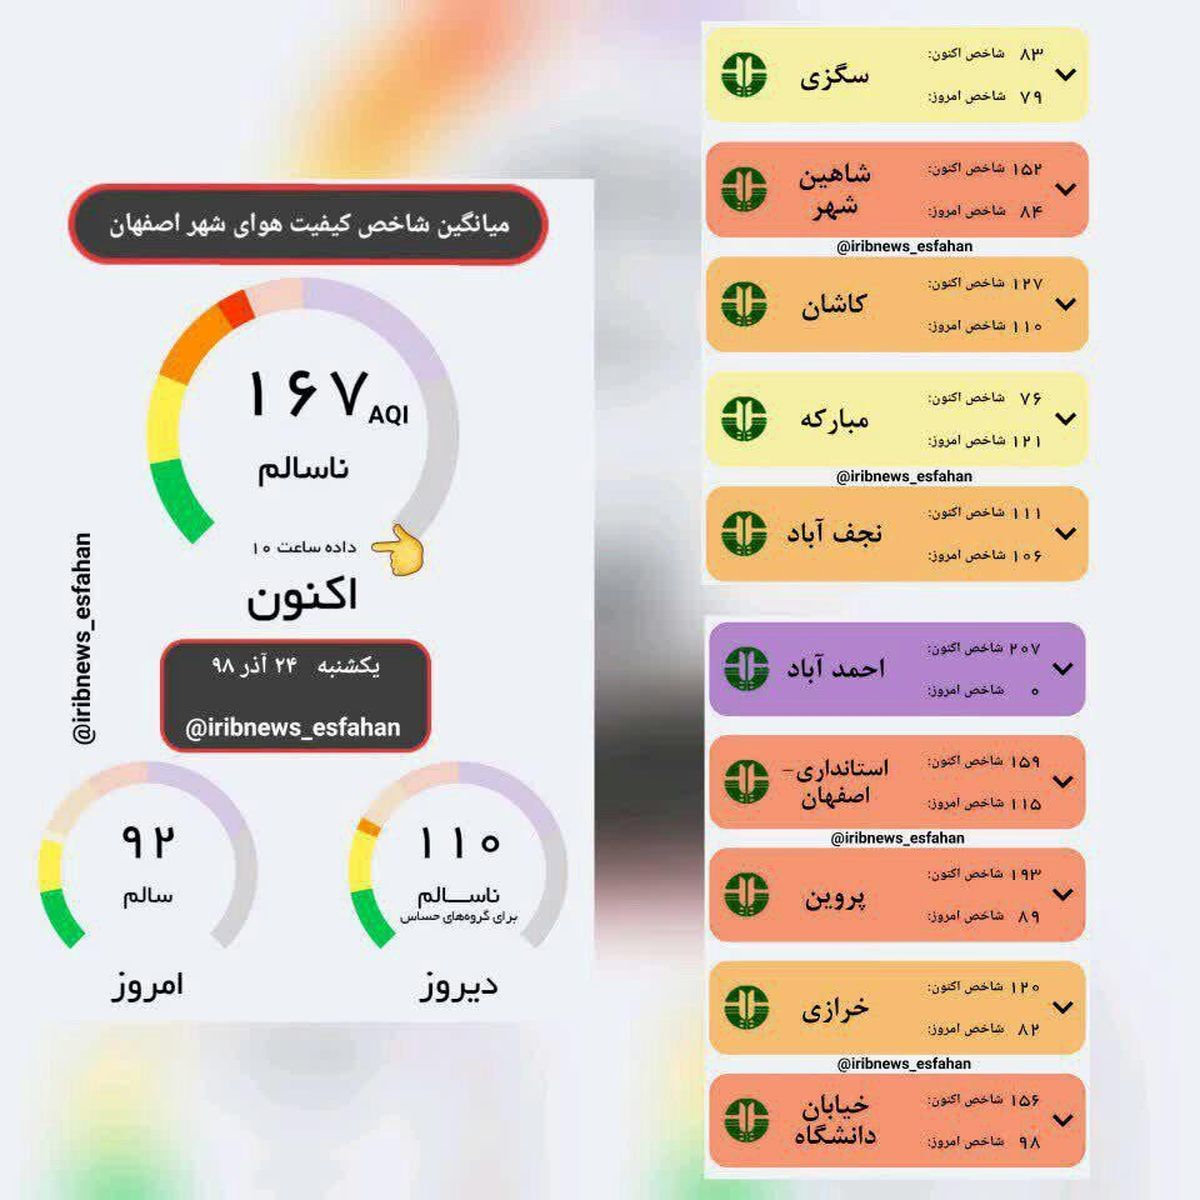 آخرین اخبار از تعطیلی مدارس اصفهان دوشنبه 25 آذر 98